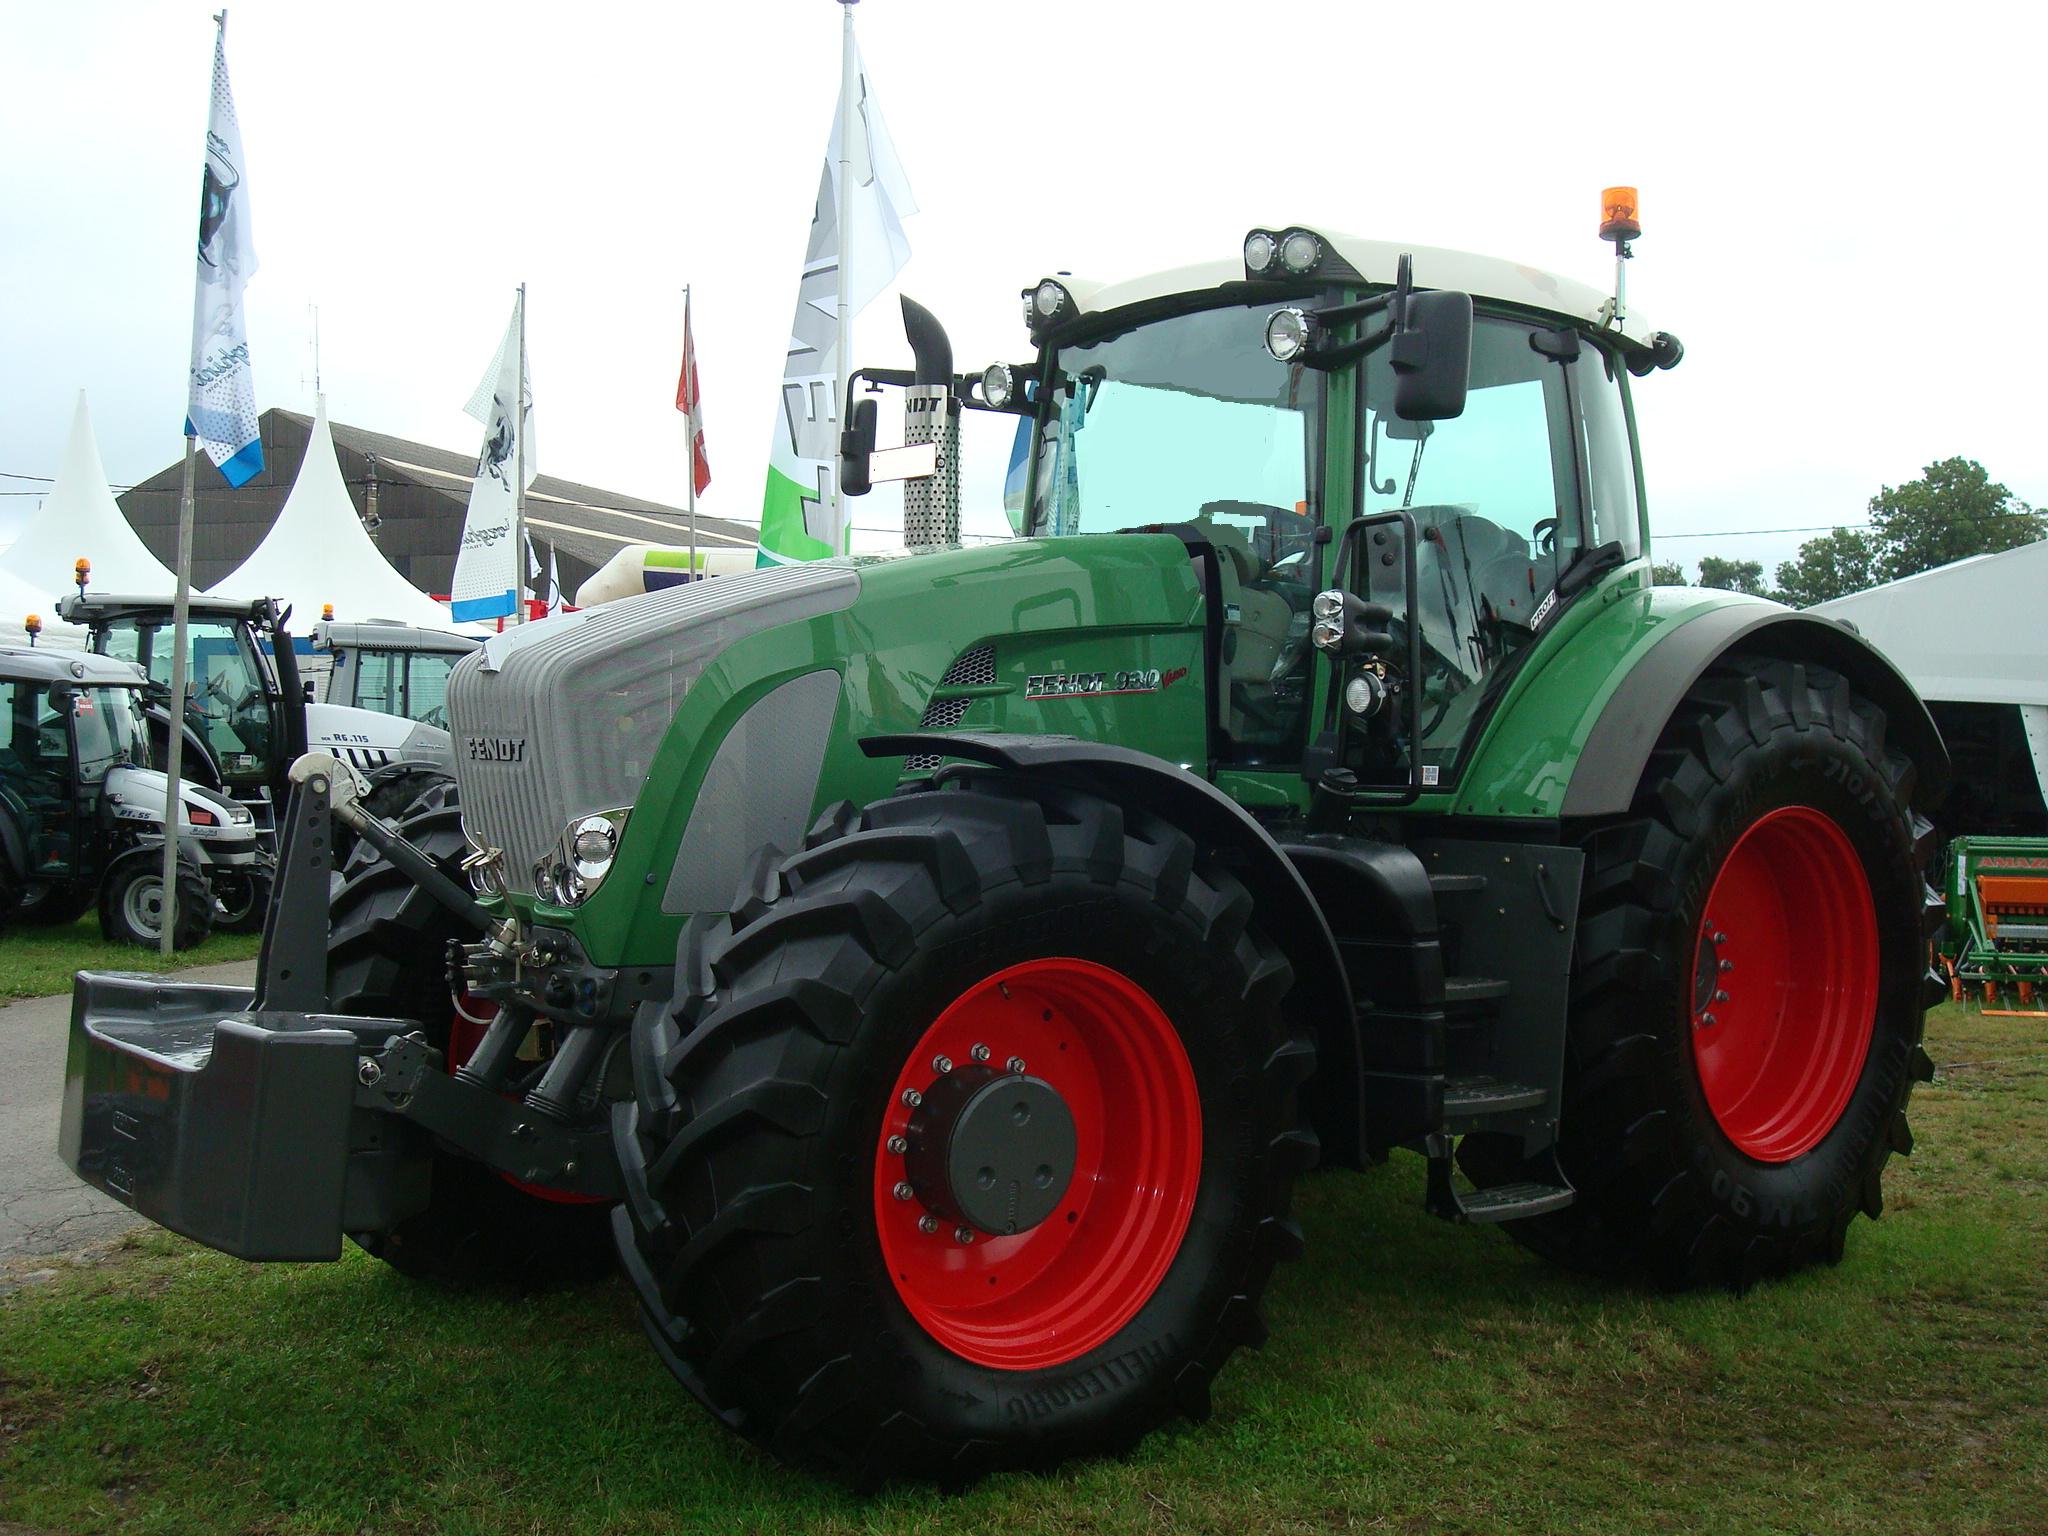 File:Traktor Fendt 930 Vario.JPG - Wikipedia